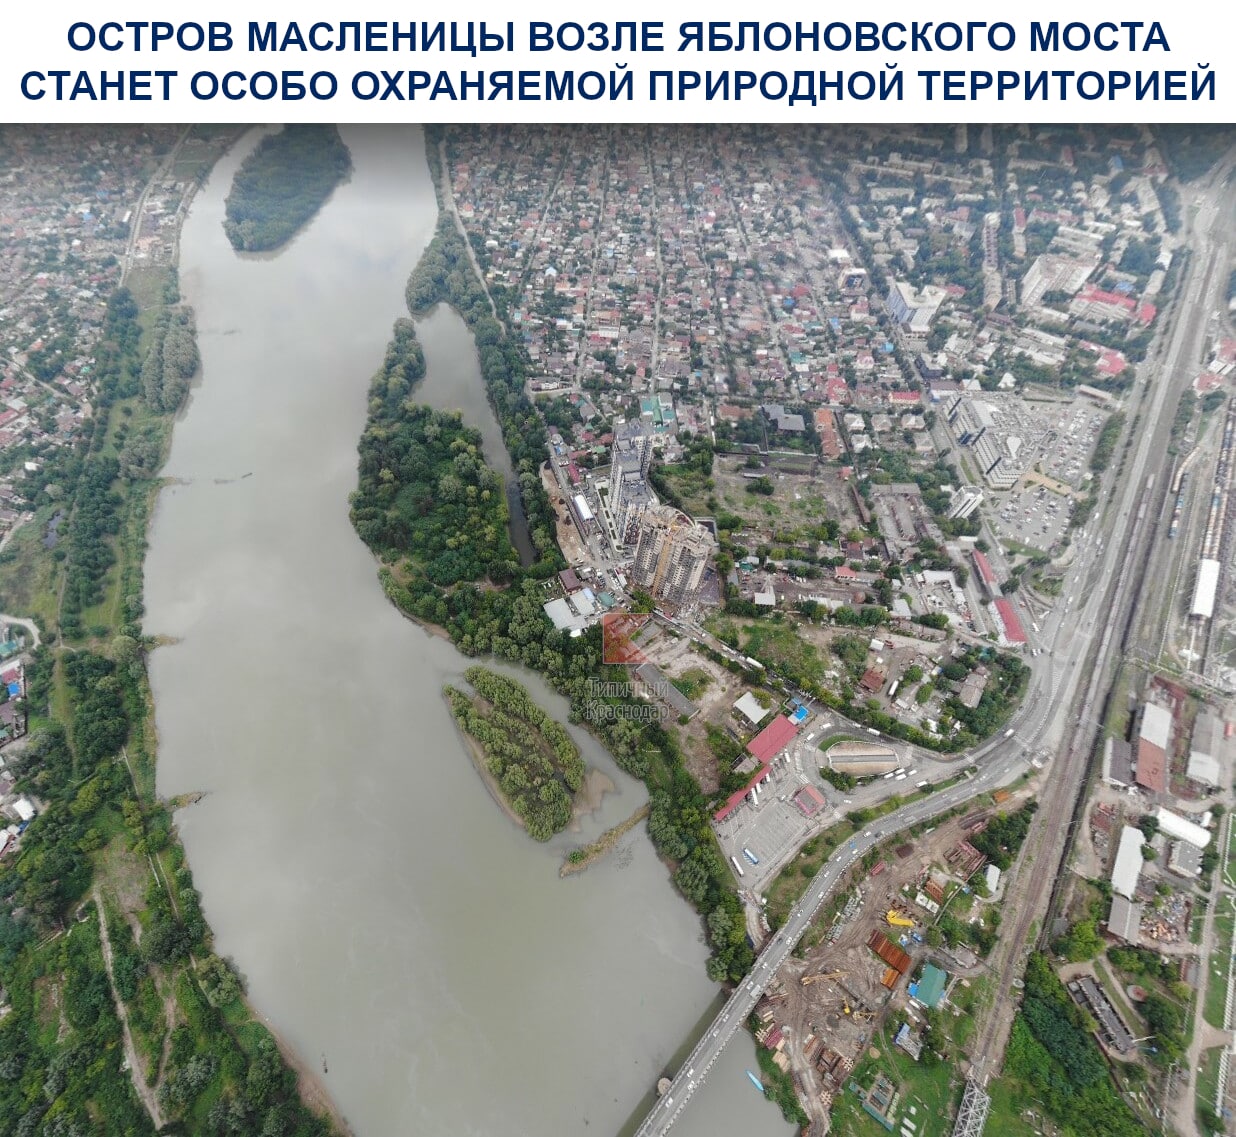 Полуостров возле Яблоновского моста станет особо охраняемой природной территорией